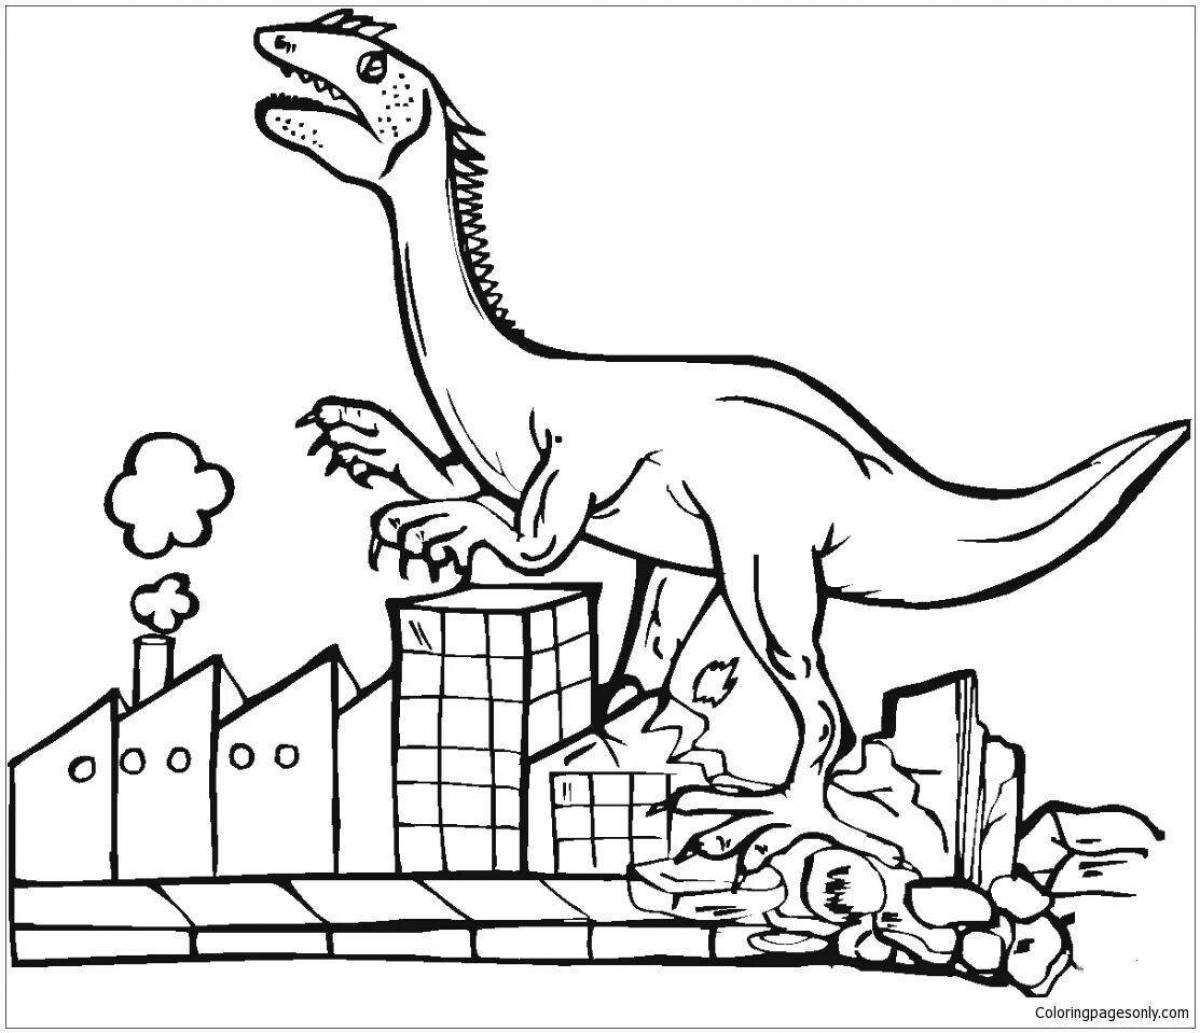 Раскраска для детей динозавры машины